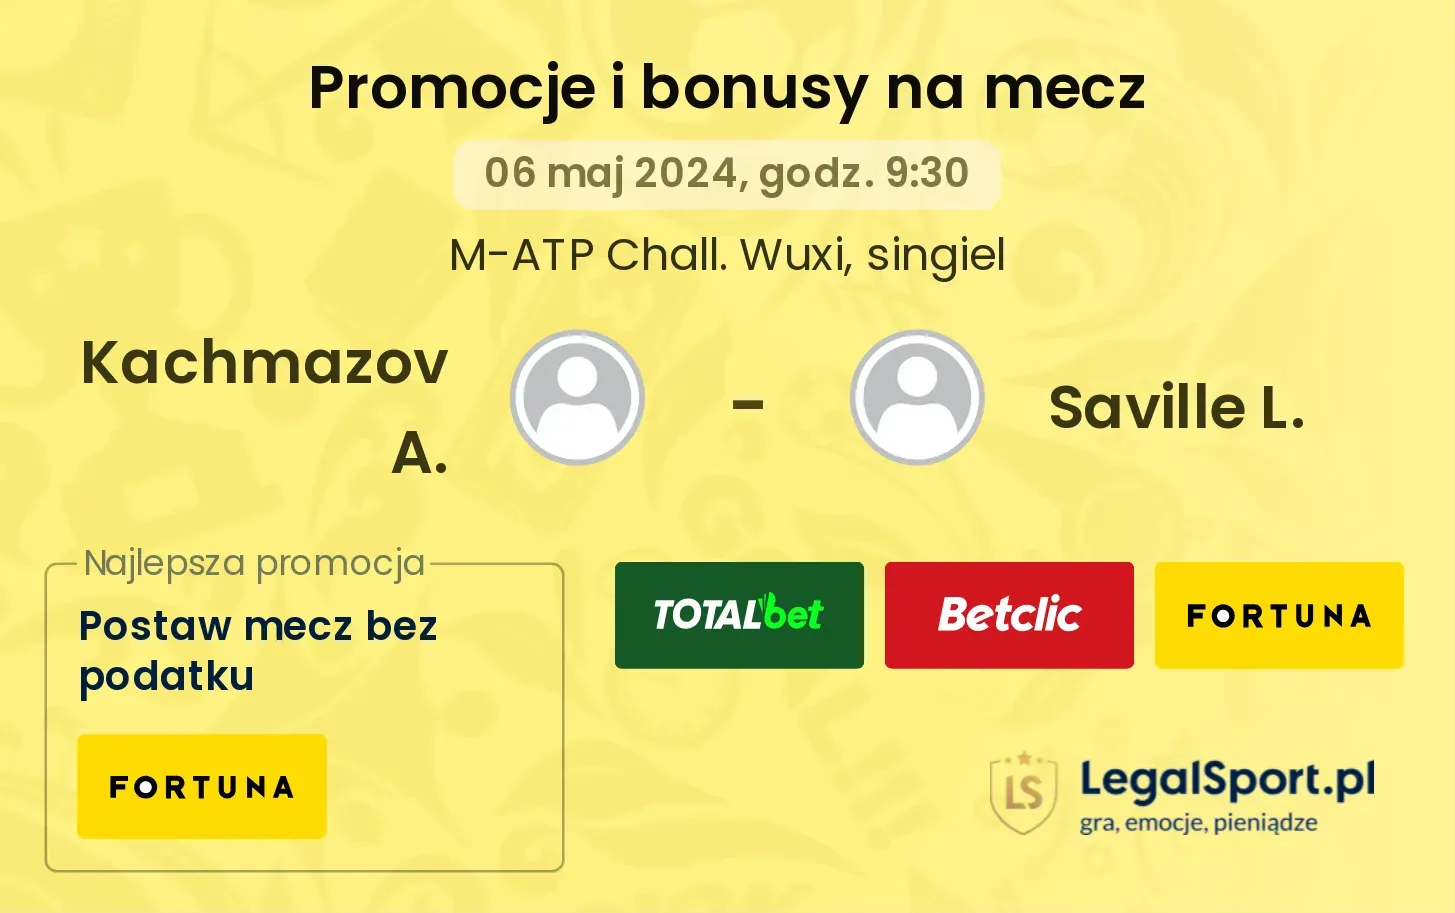 Kachmazov A. - Saville L. promocje bonusy na mecz